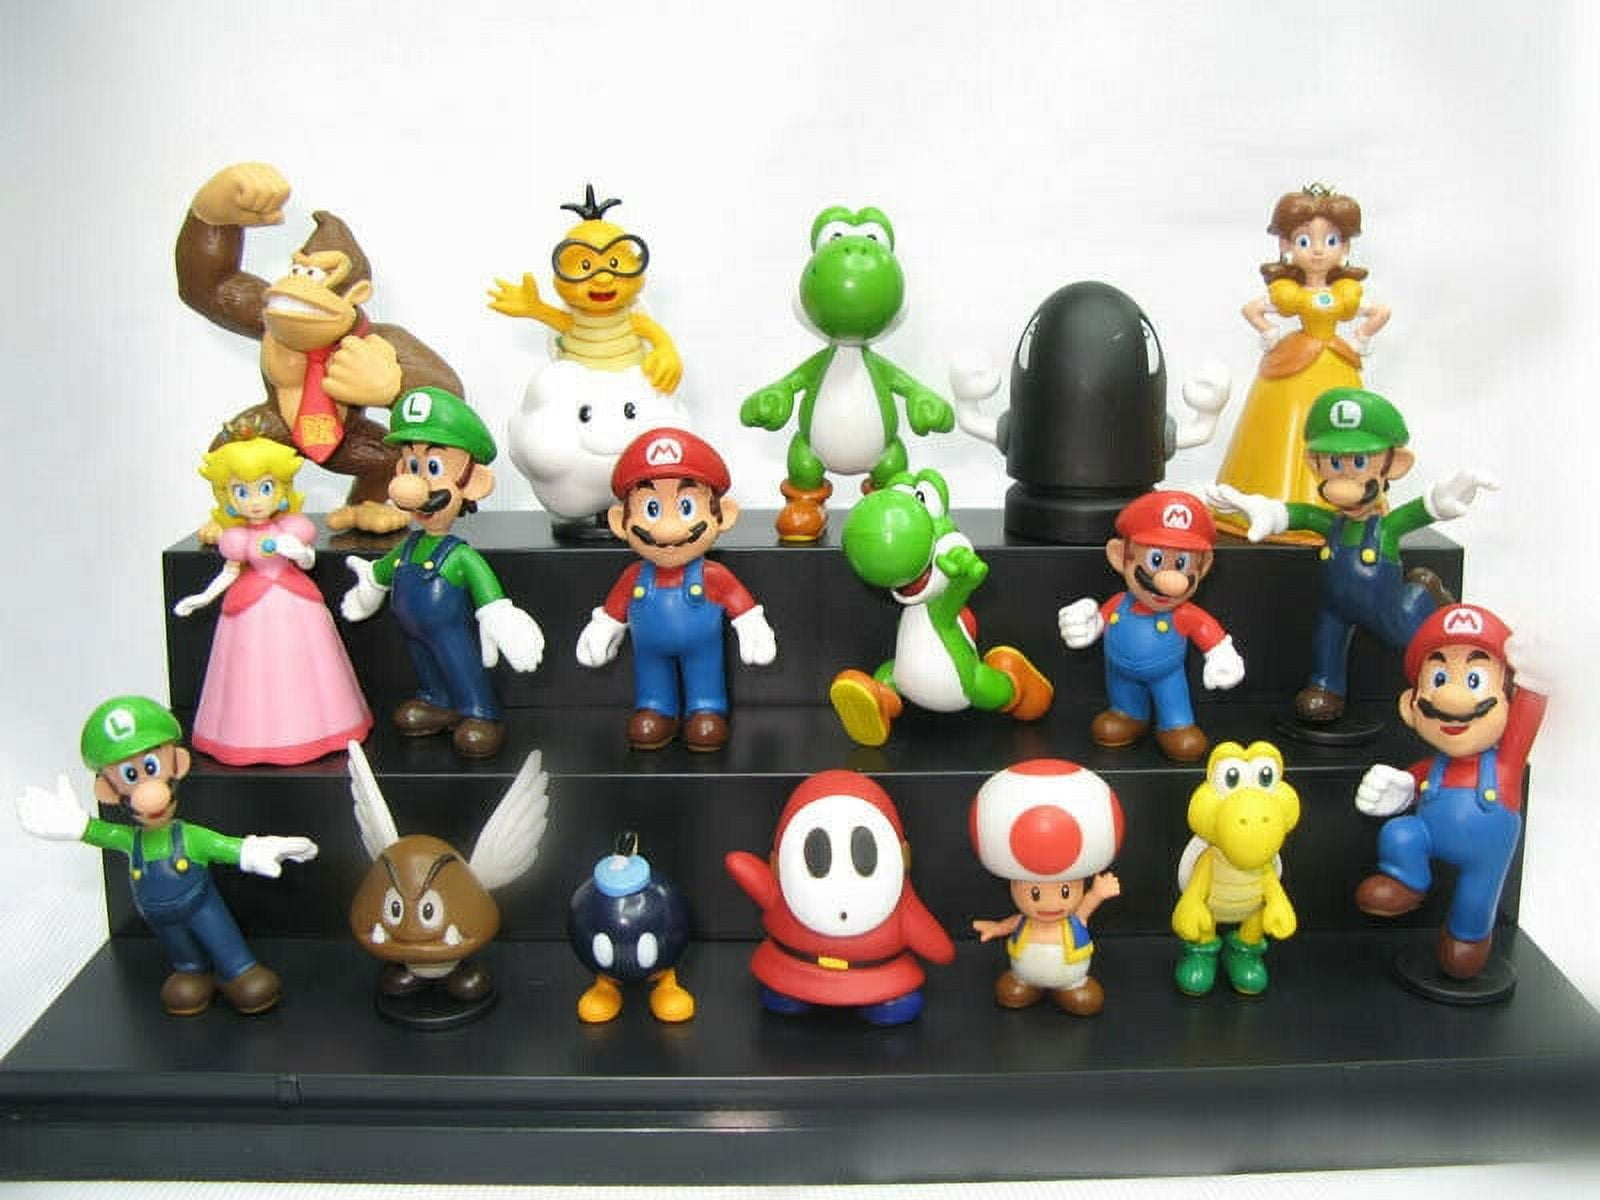 18 Super Cool Pieces of Super Mario Bros Gear